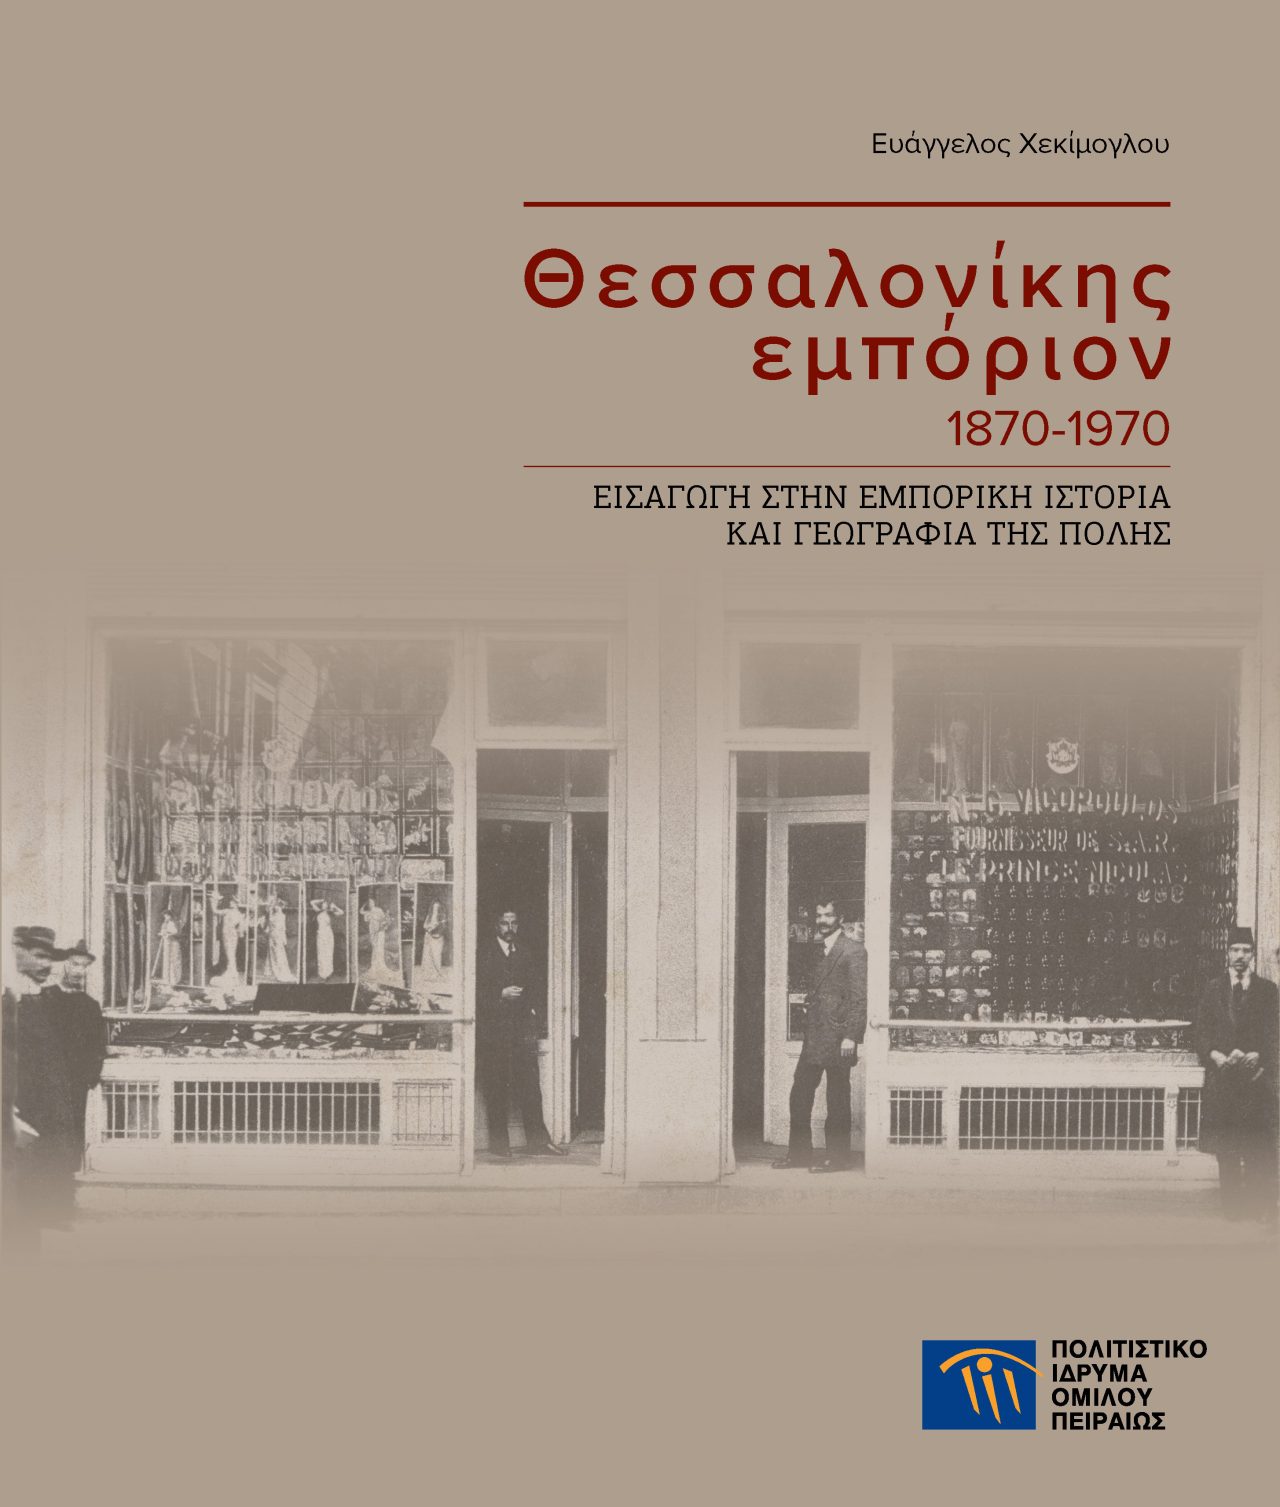 Θεσσαλονίκης εμπόριον 1870-1970: Εισαγωγή στην εμπορική ιστορία και γεωγραφία της πόλης - Νέα έκδοση του ΠΙΟΠ